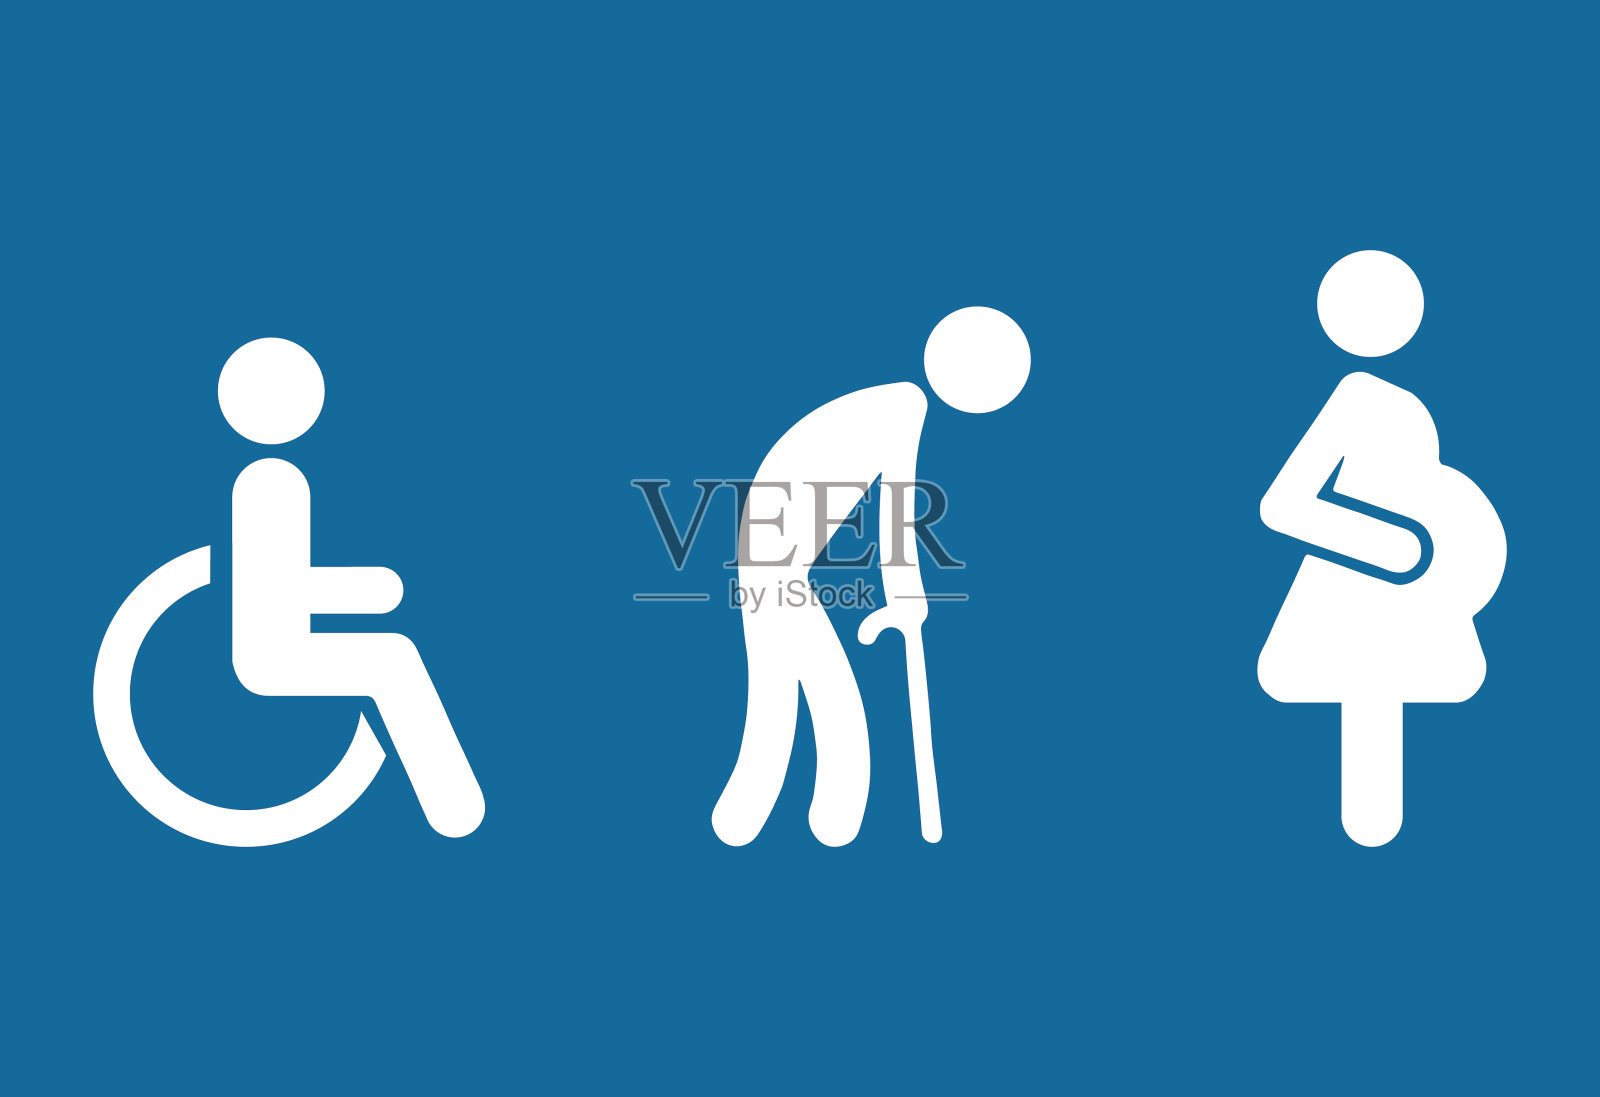 符号优先残疾乘客老年乘客孕妇老人妇女婴儿婴儿矫形轮椅拐杖移动人体矢量标志。残疾人卫生间的象征。优先安排座位。插画图片素材